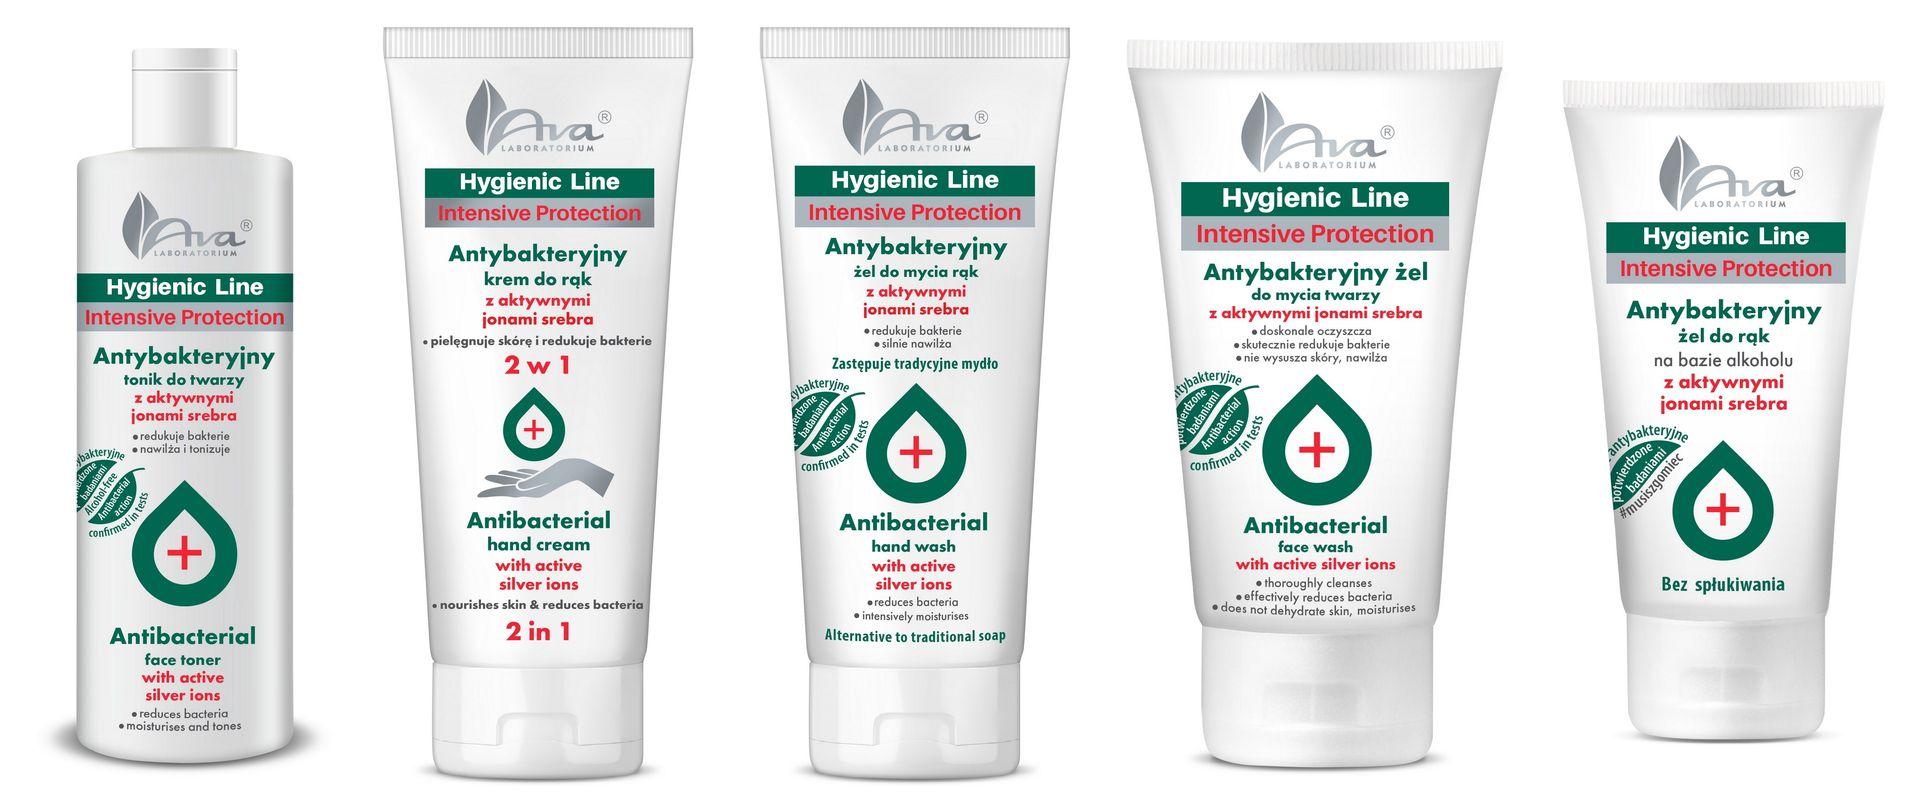 Hygienic Line od Avy - ochrona skóry to dziś prawdziwe wyzwanie